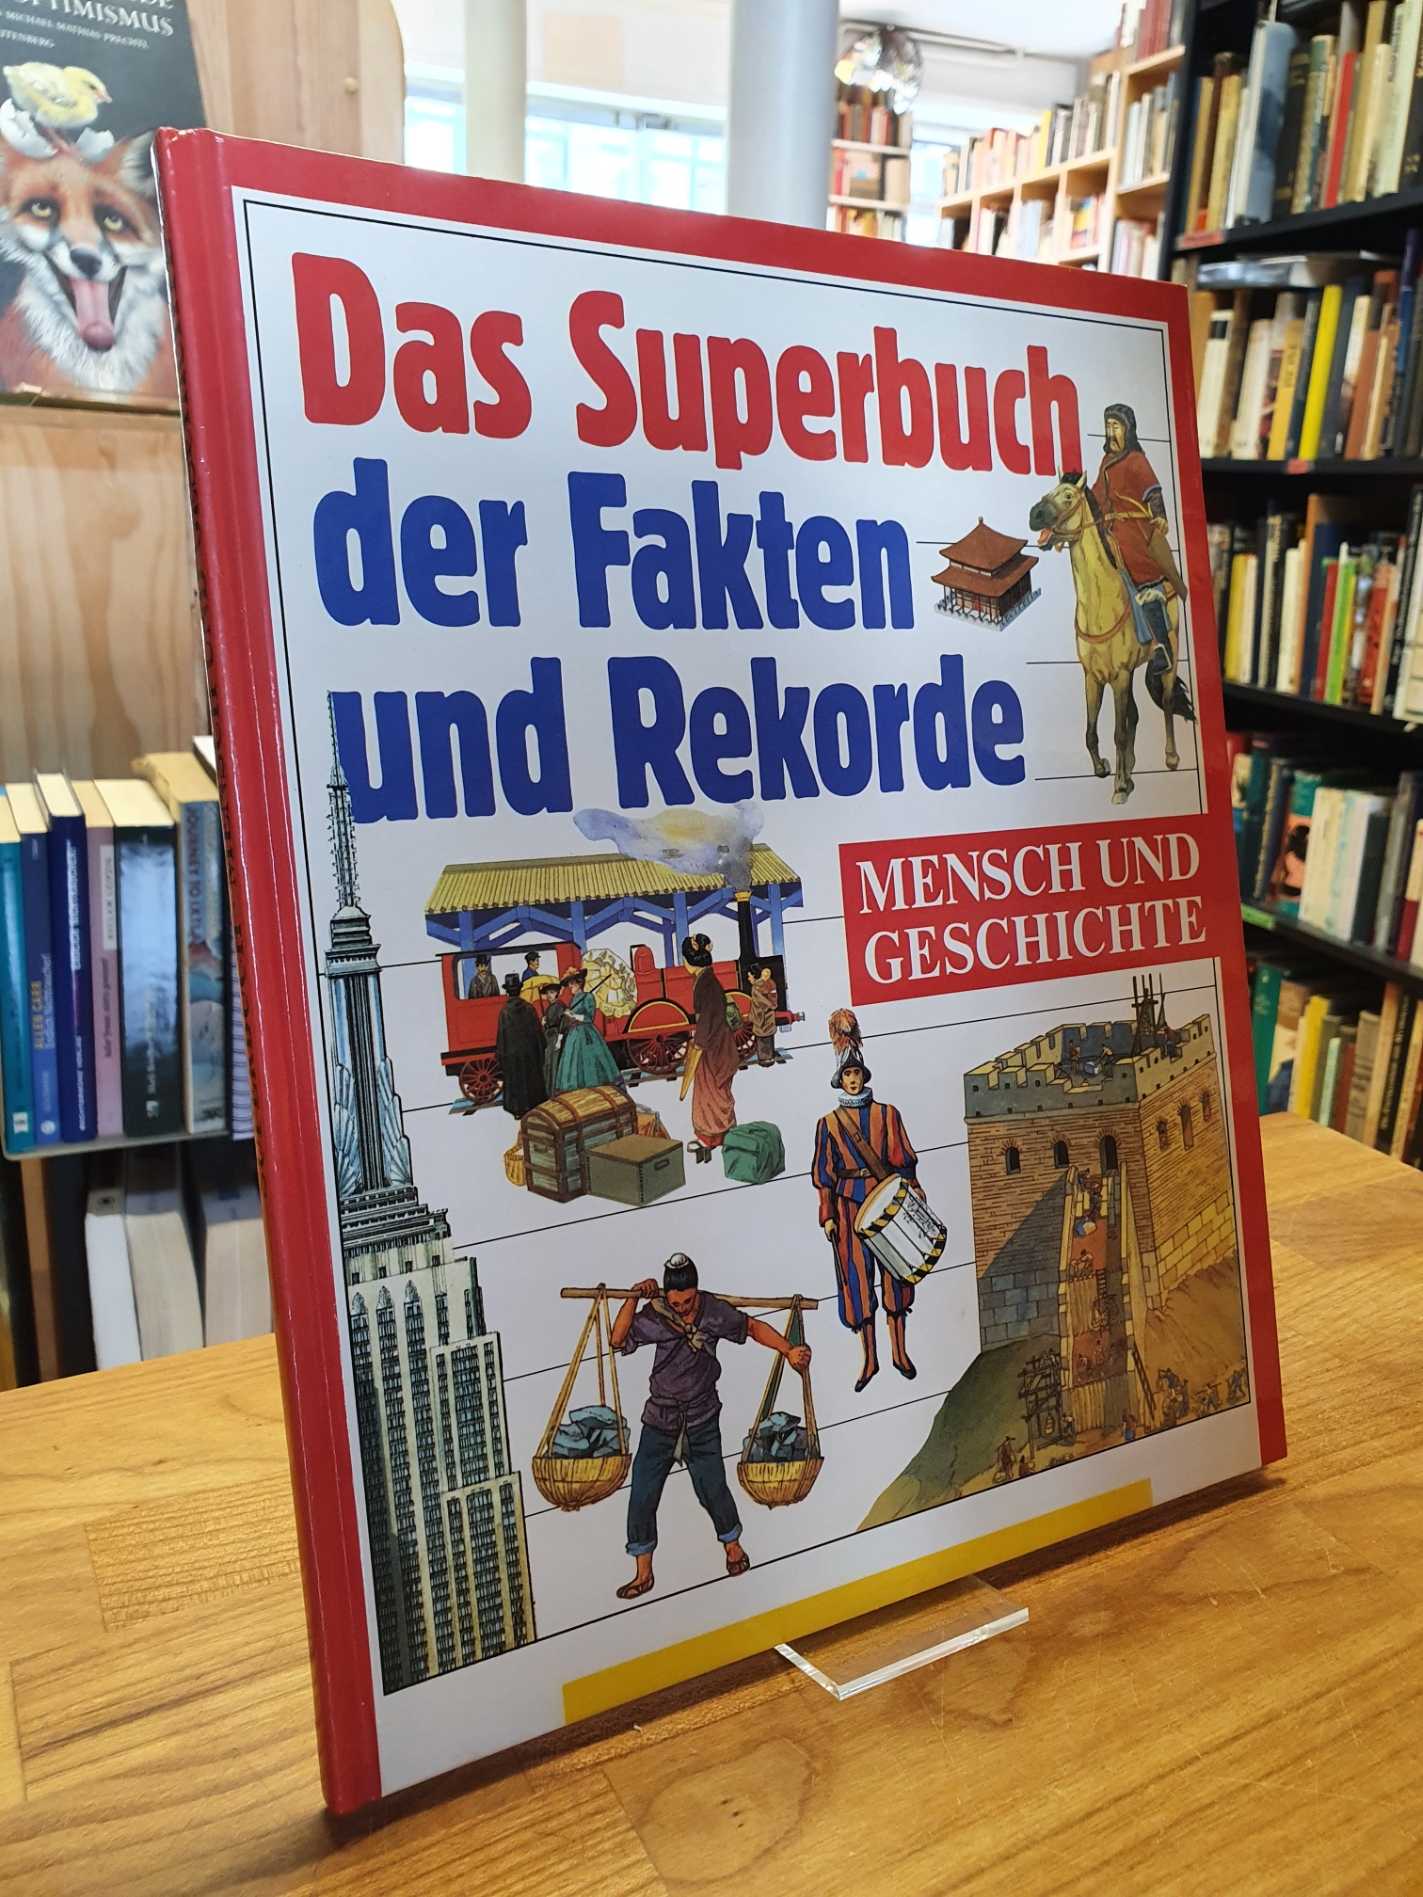 Grant, Das Superbuch der Fakten und Rekorde – Mensch und Geschichte.